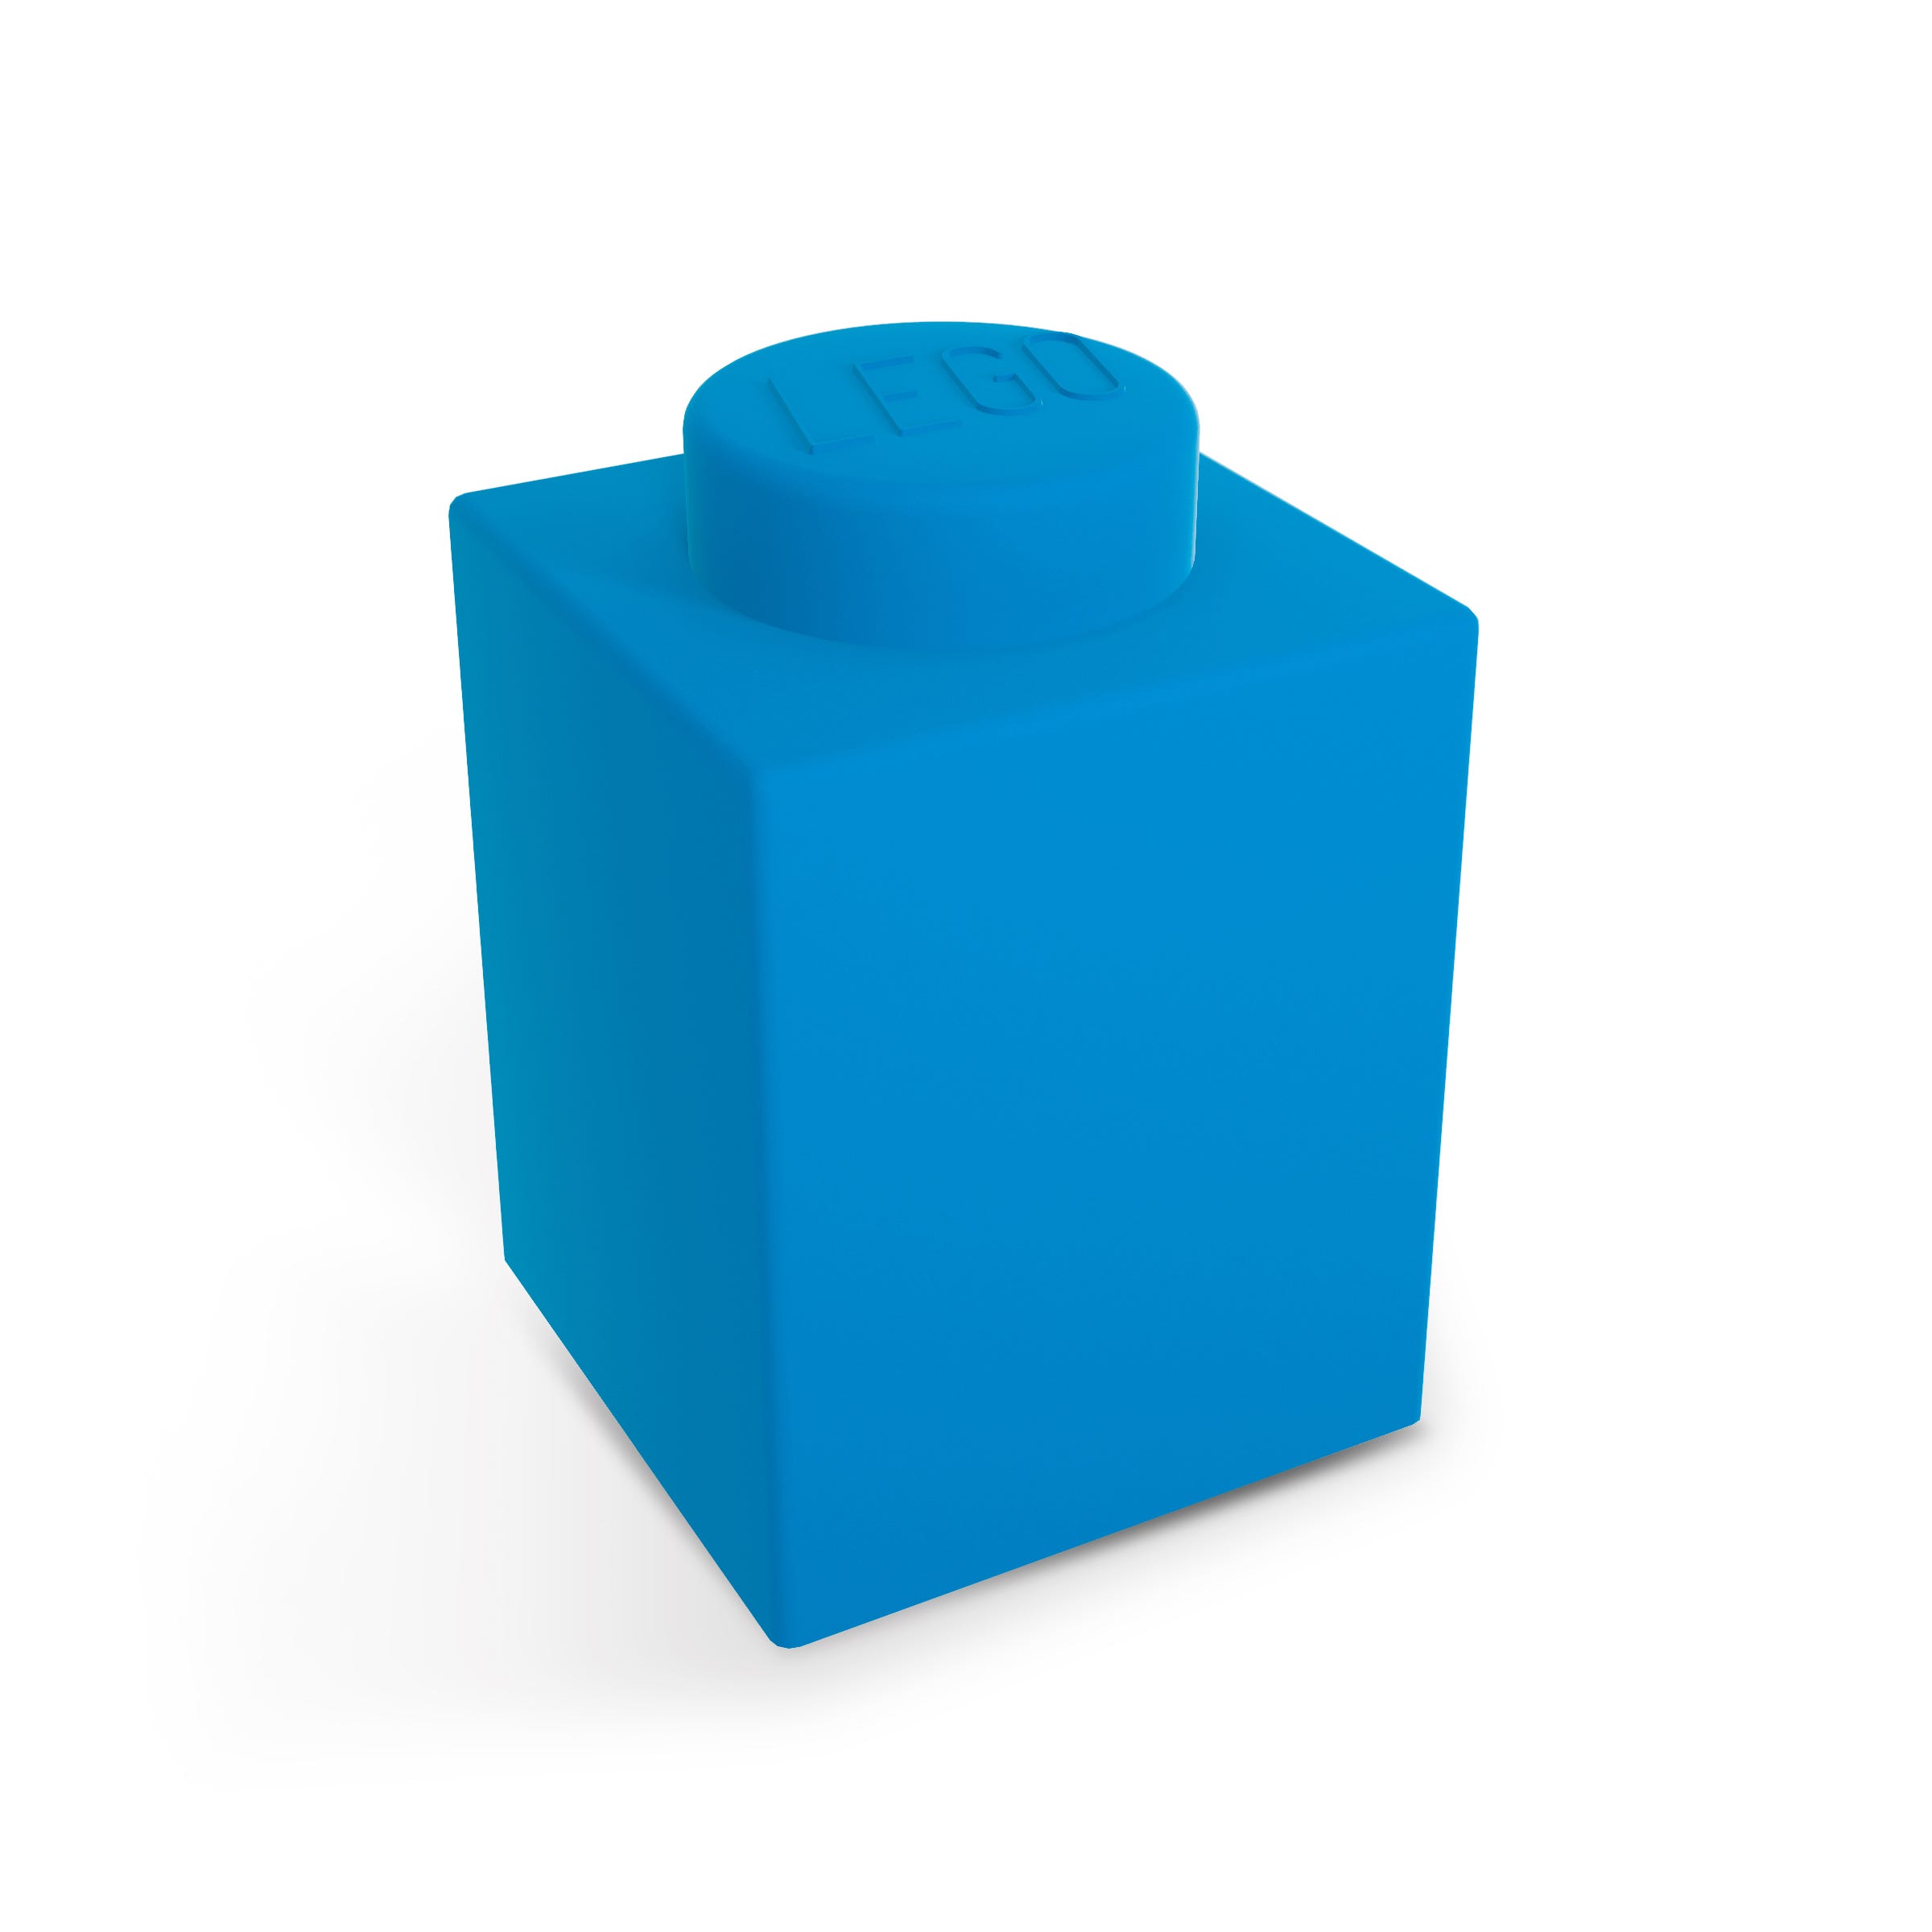 Zdjęcia - Klocki Lego Lampka nocna w kształcie klocka 1 × 1 - niebieska 